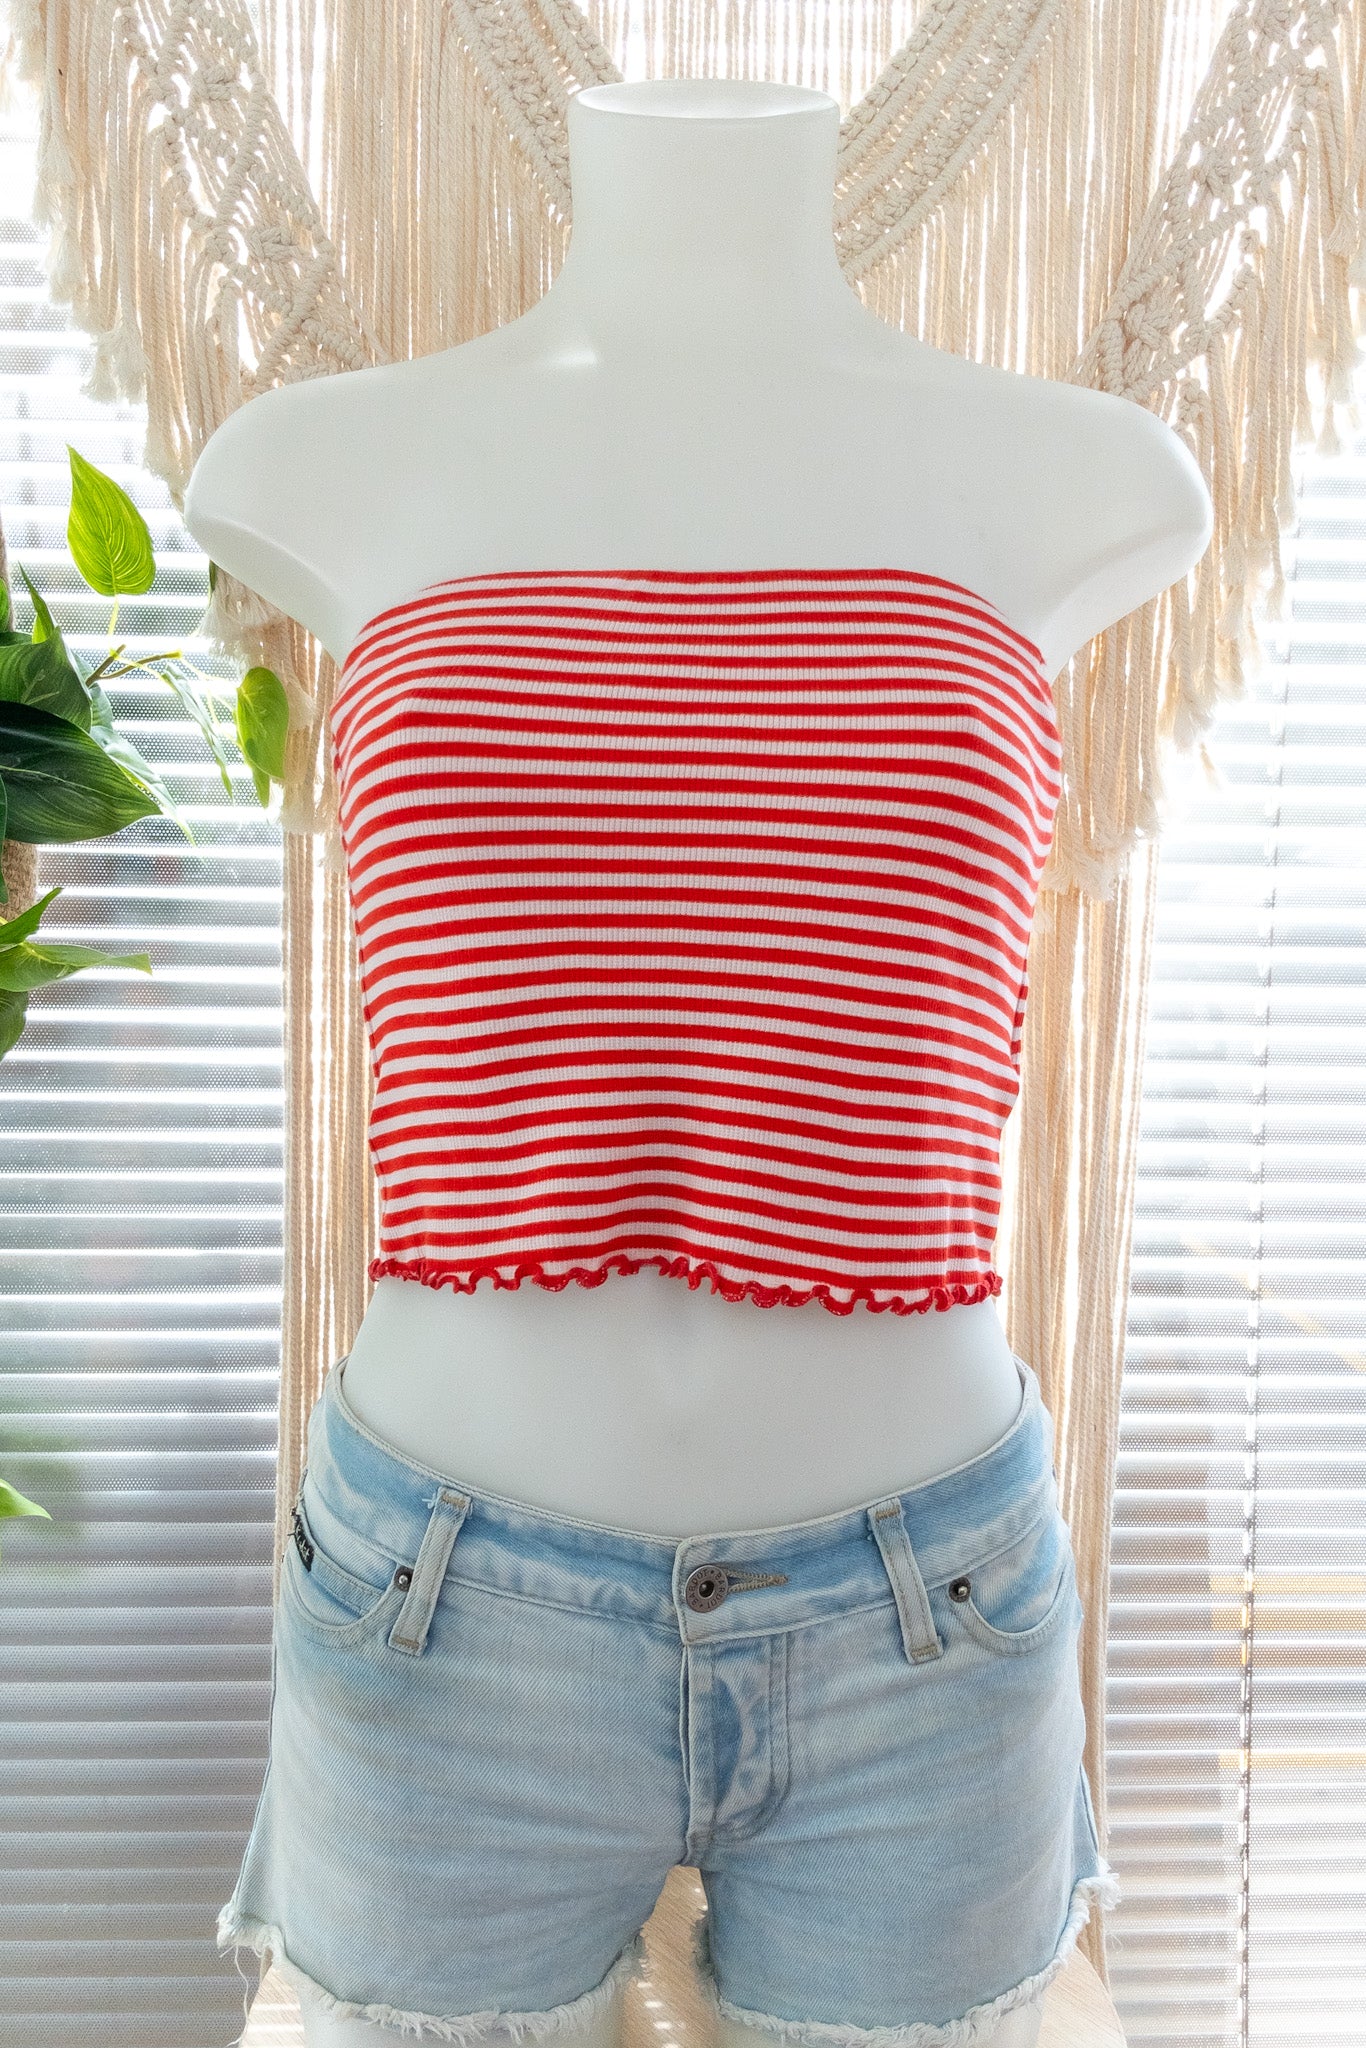 KOOKAI Red & White Striped Boob Tube Top - Size 2 (AU10) – The